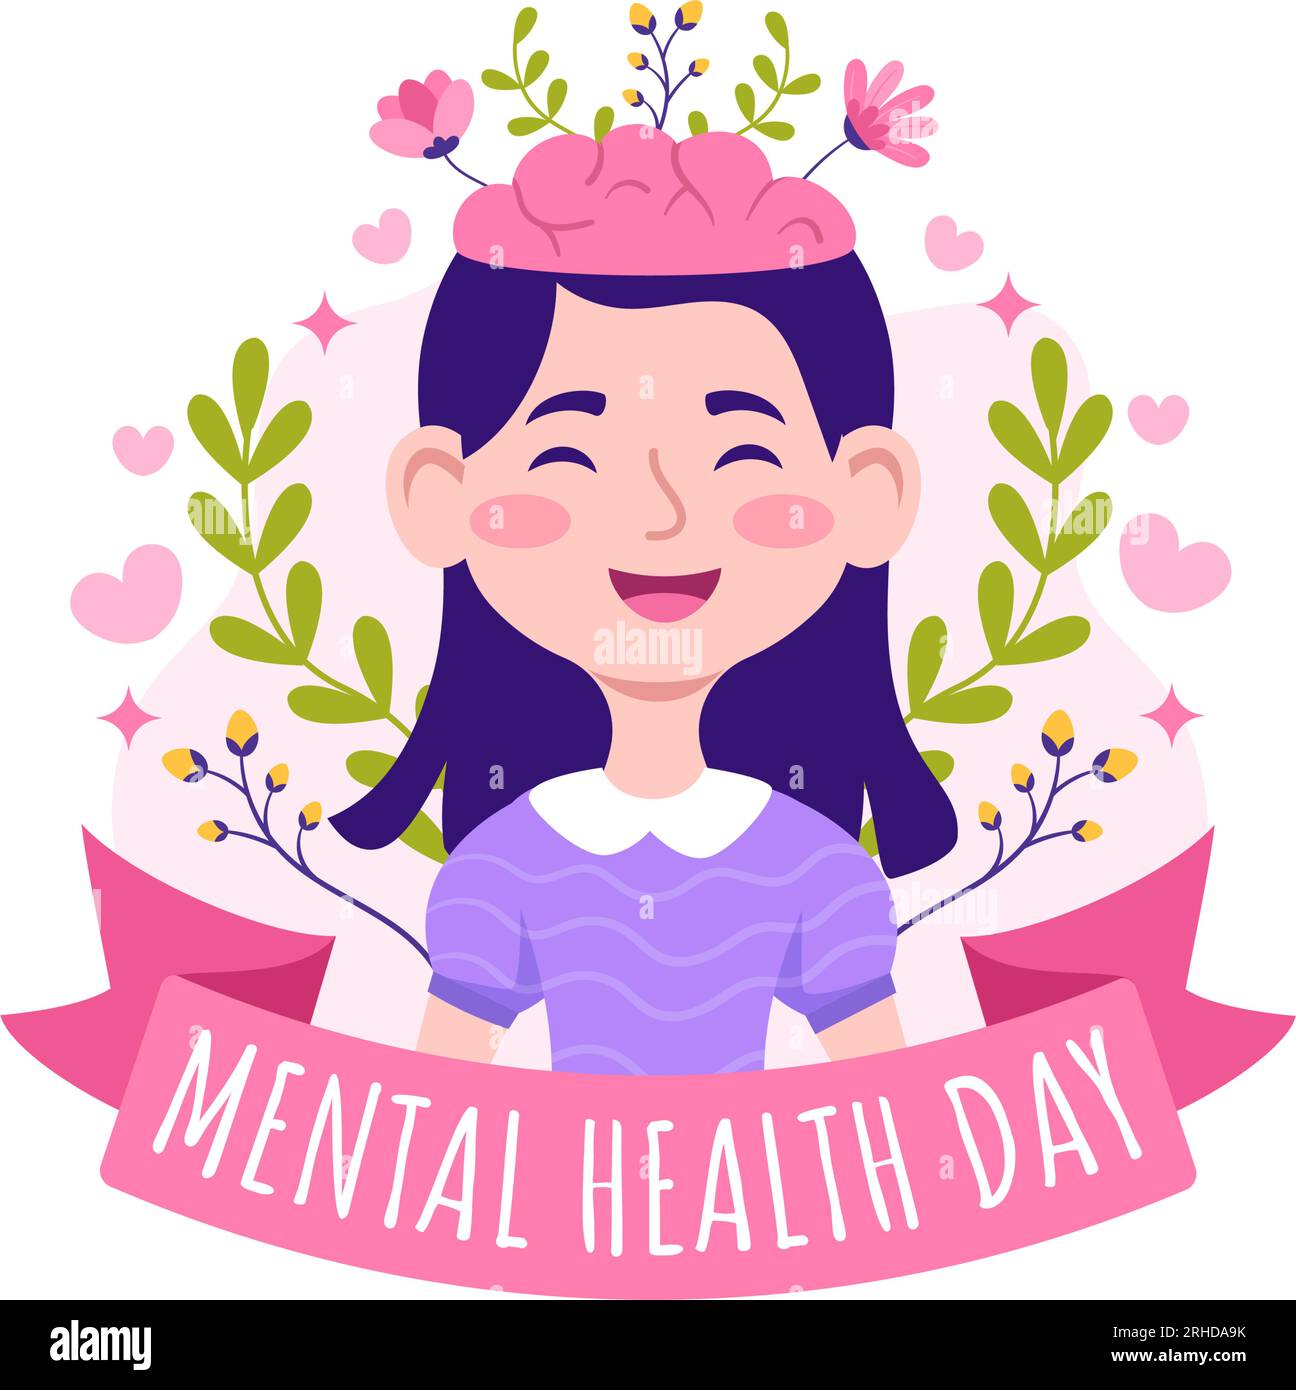 World Mental Health Day Vector Illustration am 10. Oktober mit gesundem Problem und Herz im Gehirn in Flat Cartoon handgezeichnete Hintergrundvorlagen Stock Vektor